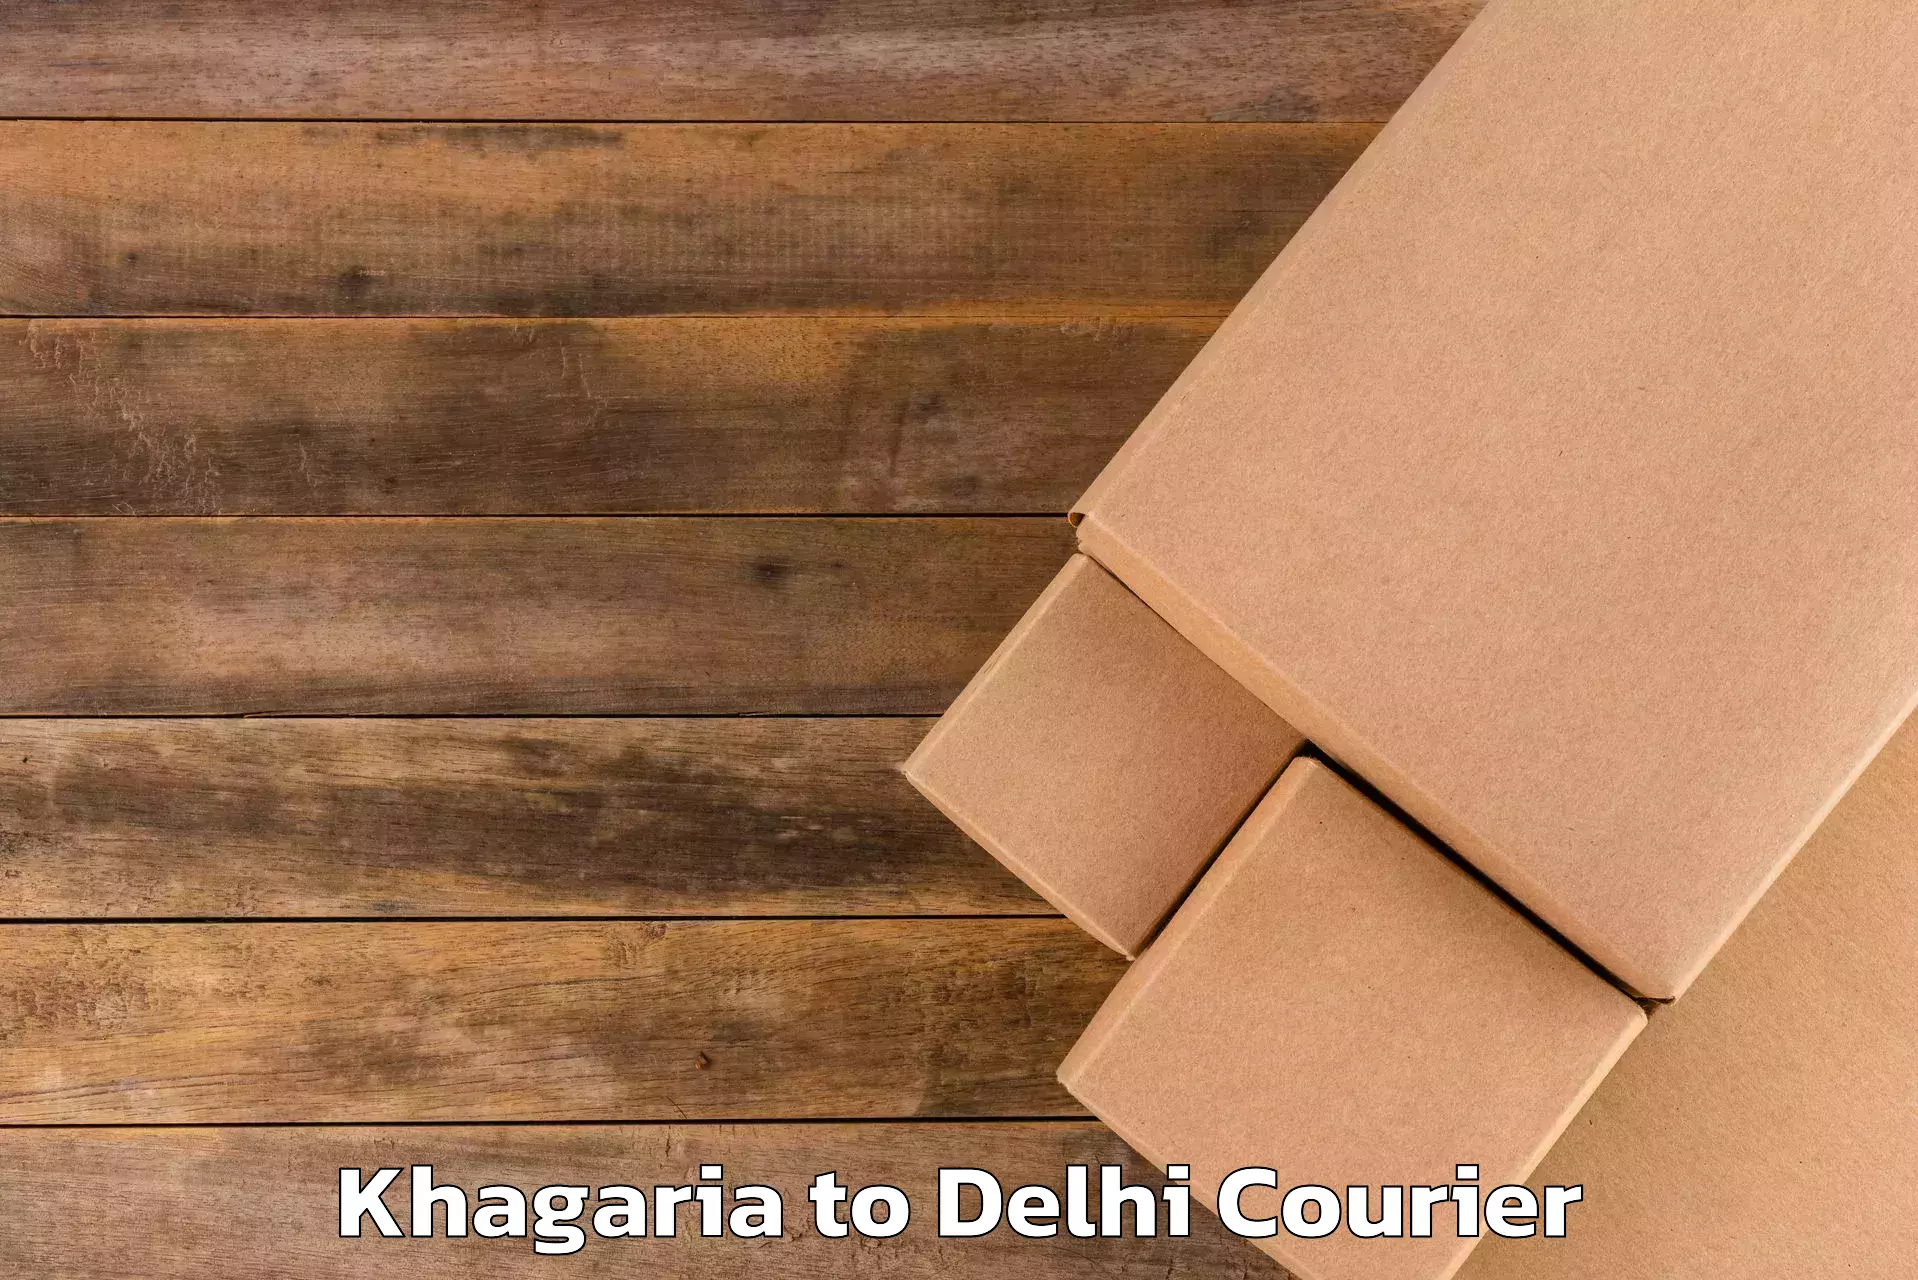 Baggage relocation service Khagaria to Delhi